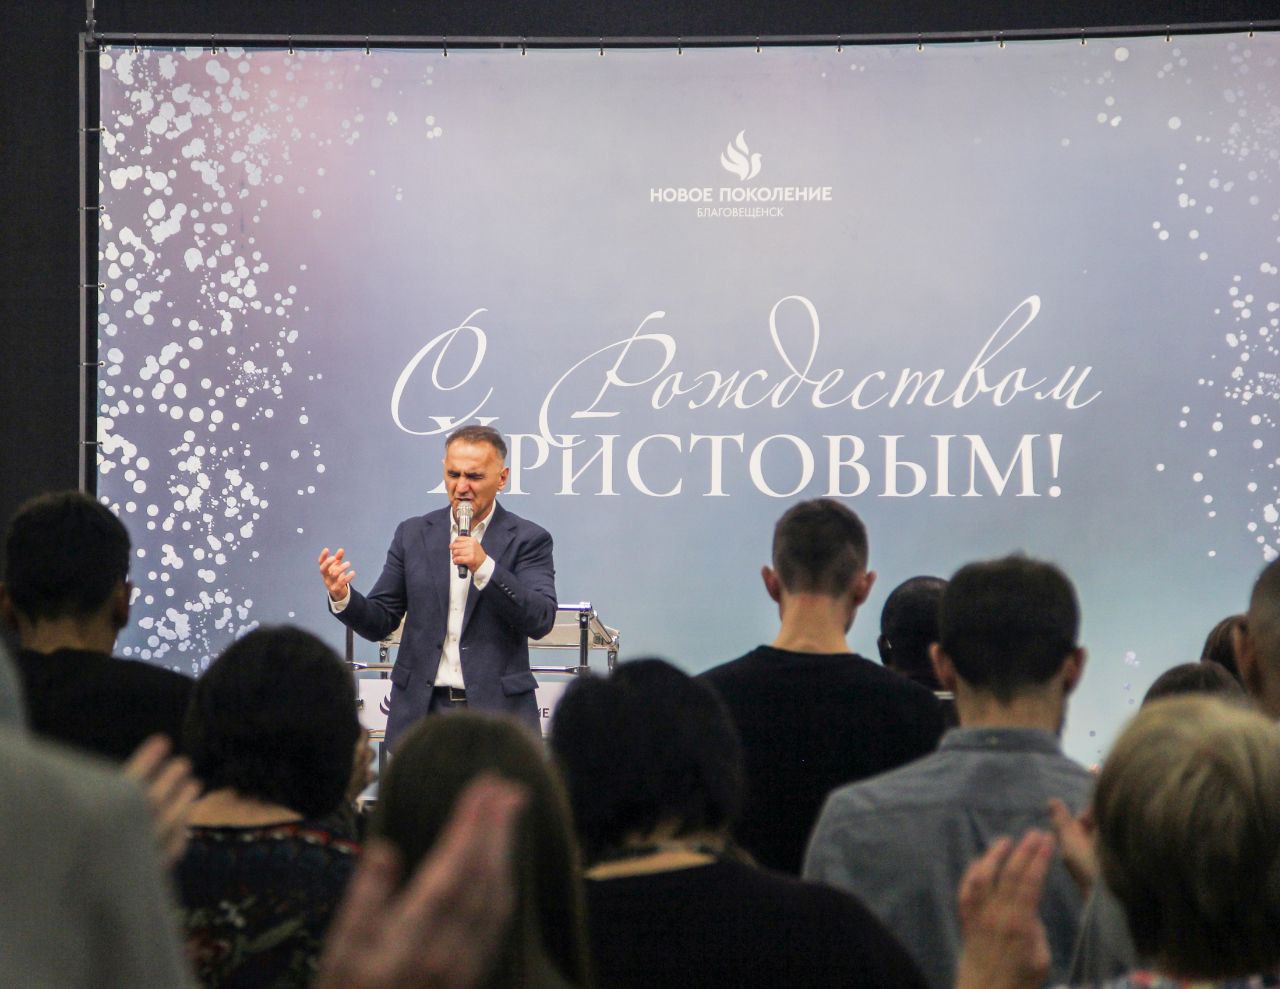 Церковь Новое Поколение отпраздновала Рождество Христово в поклонении и пророческом помазании